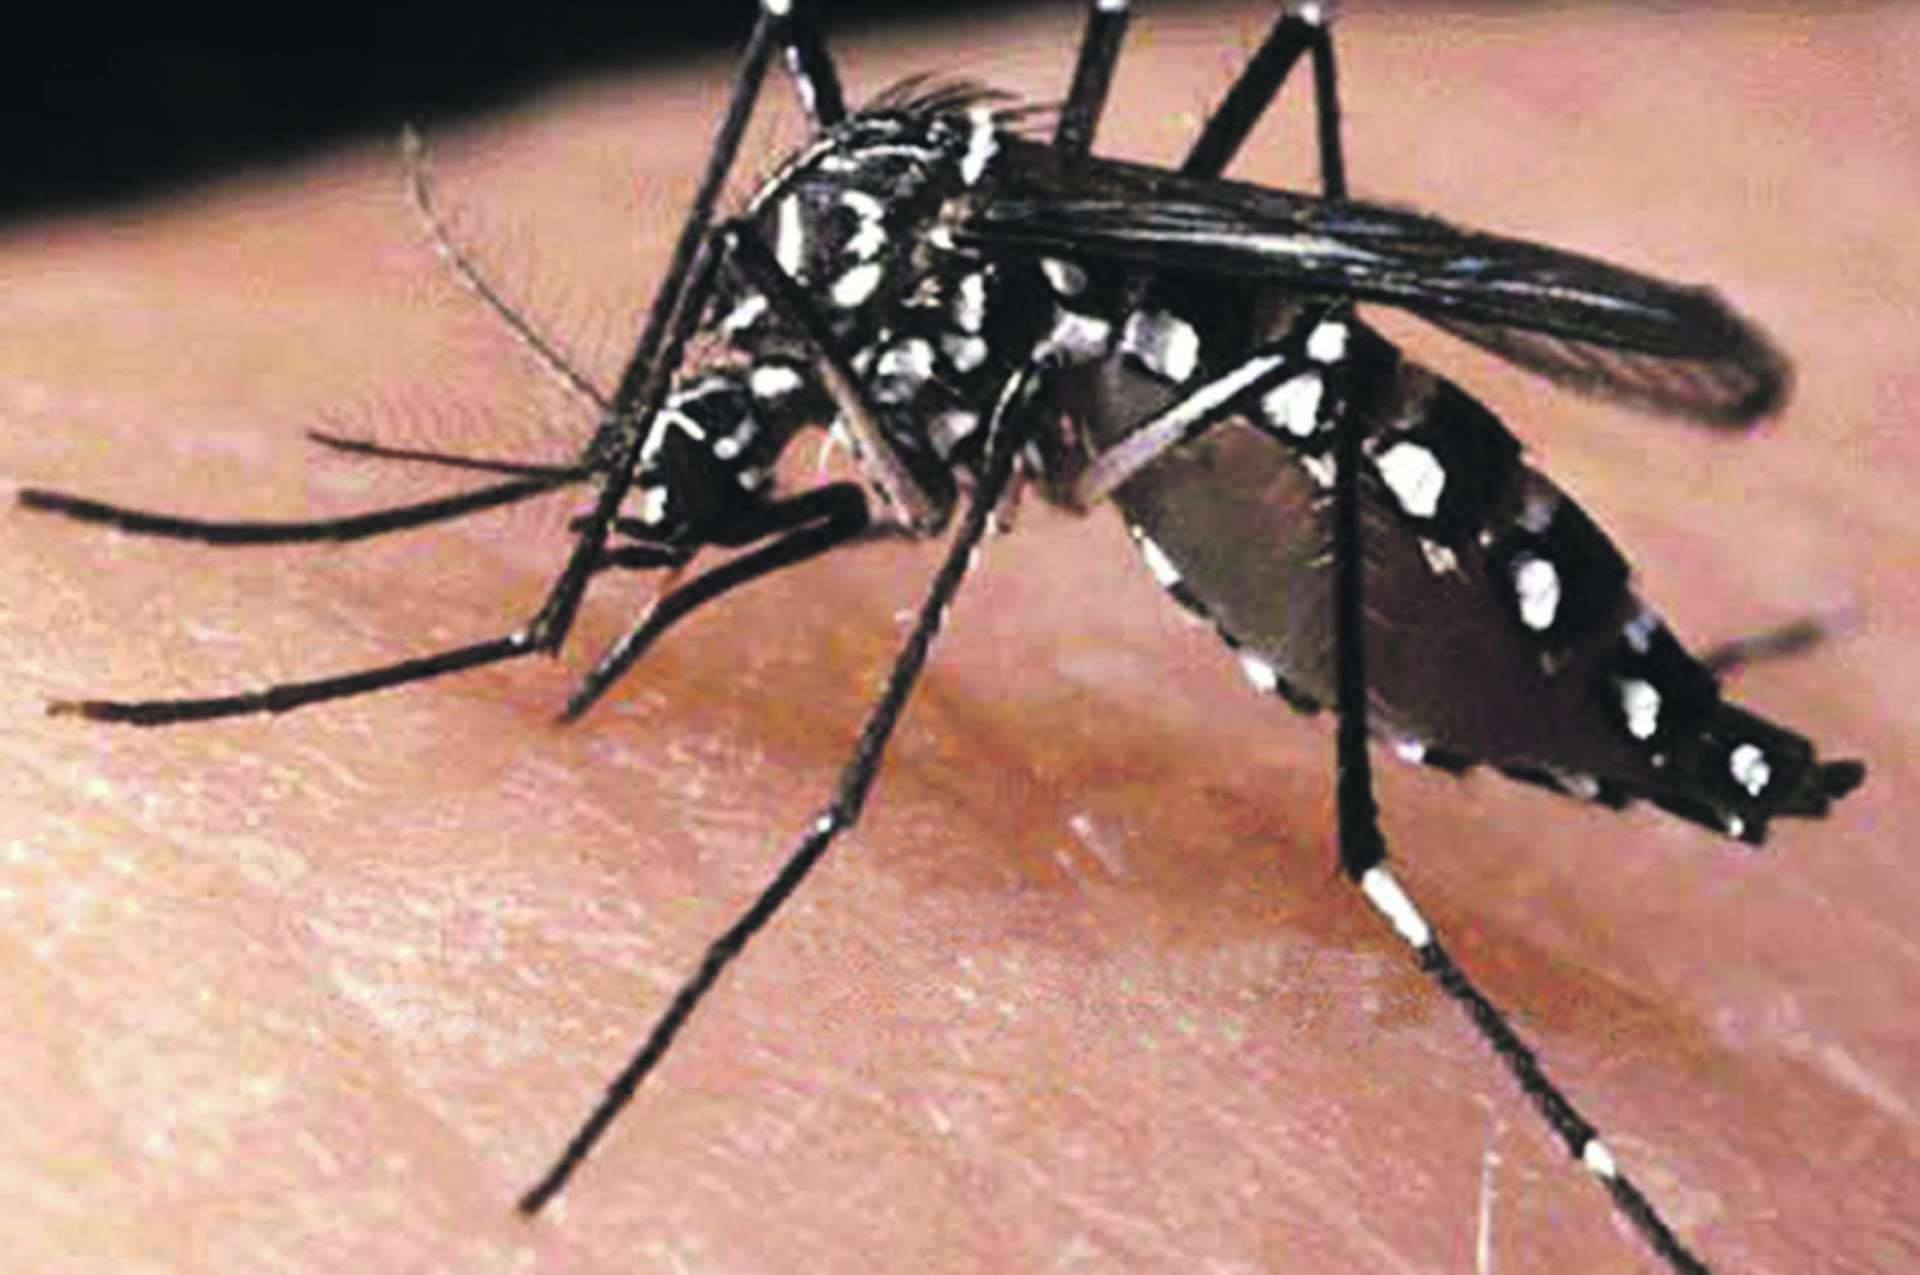 Risco de surto de dengue em Caratinga